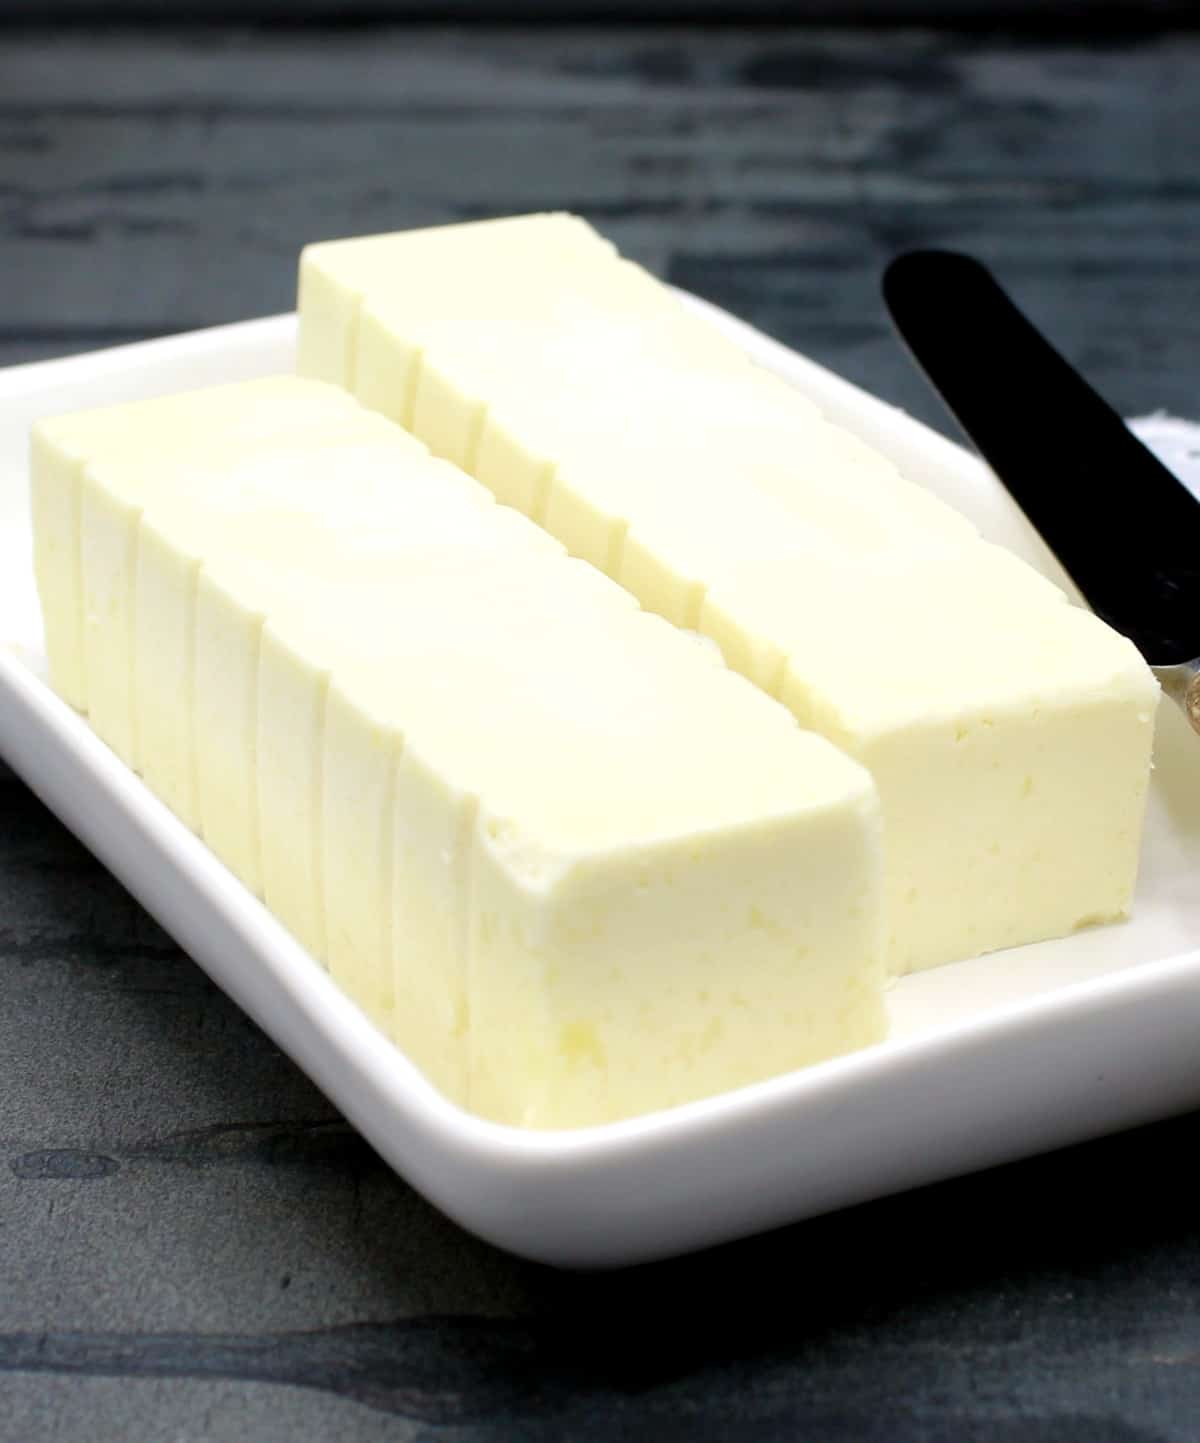 Vegan butter sticks in butter dish.